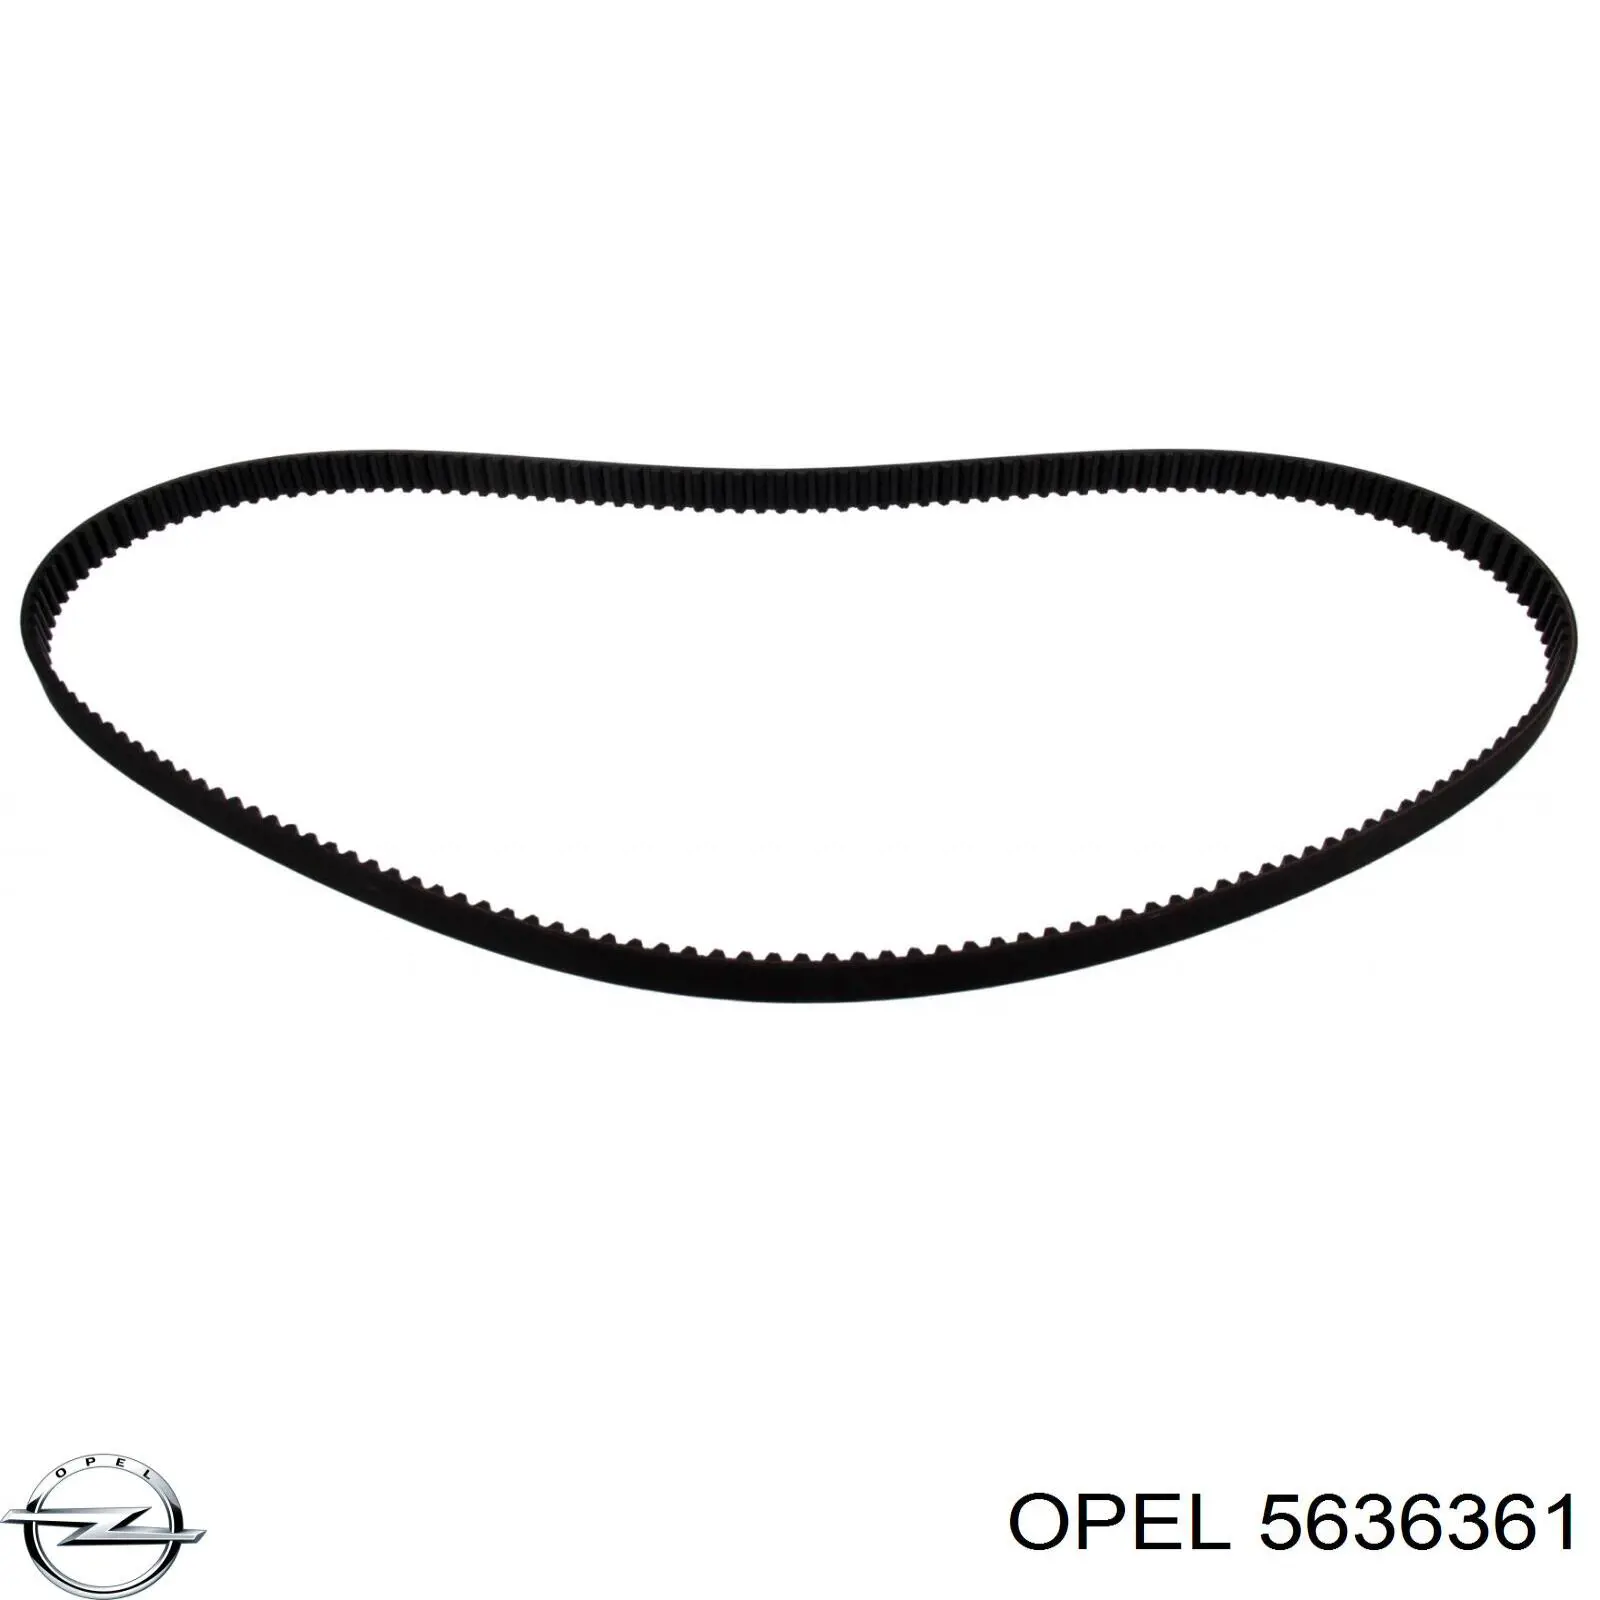 5636361 Opel correa distribucion